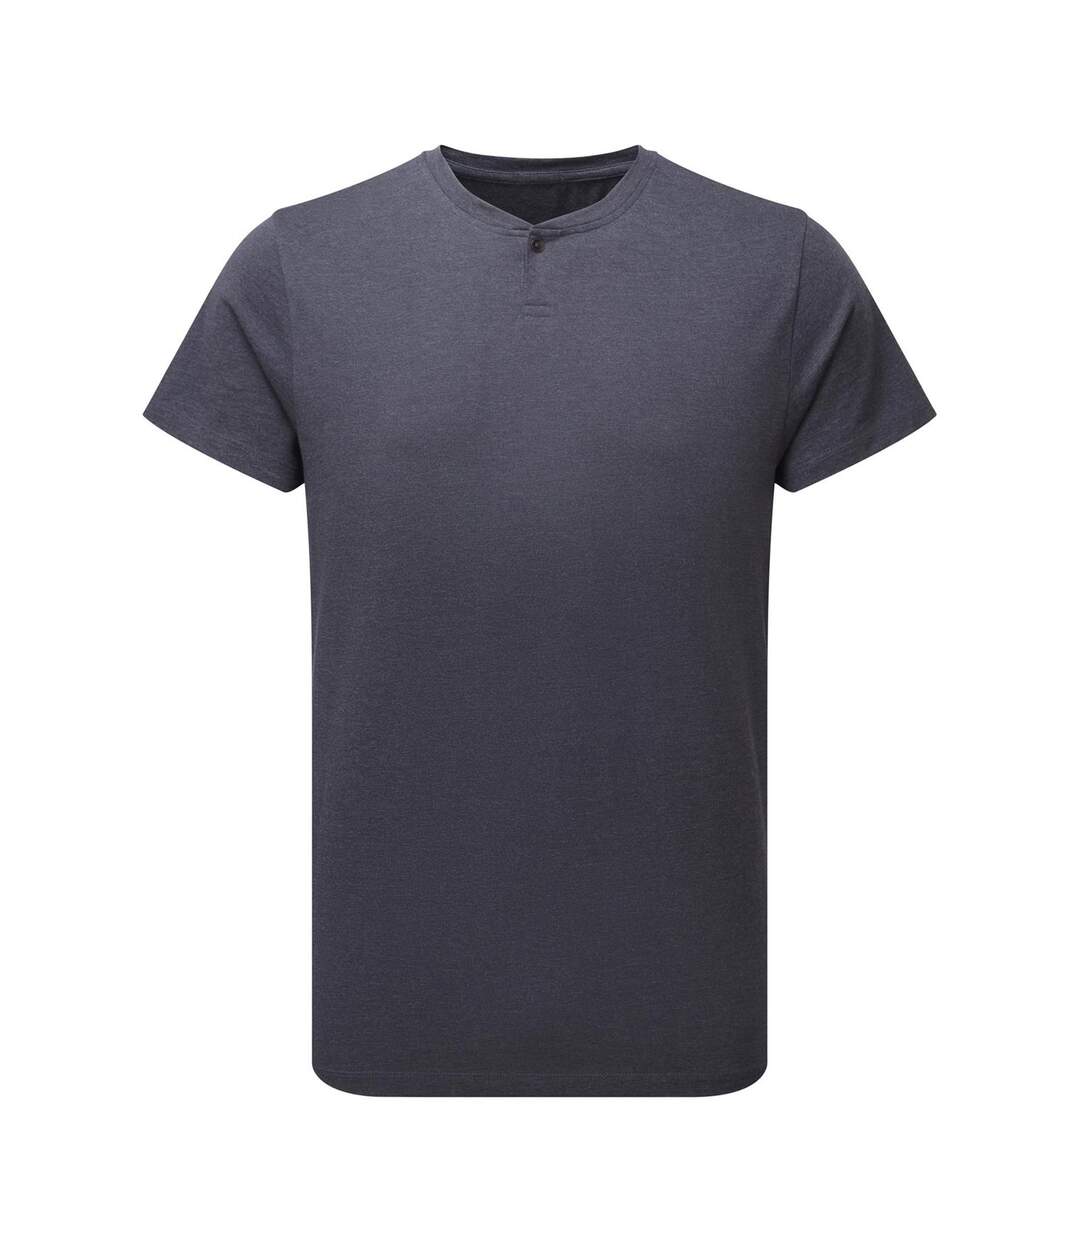 Premier Mens Comis Sustainable T-Shirt (Marine Marl) - UTPC4826